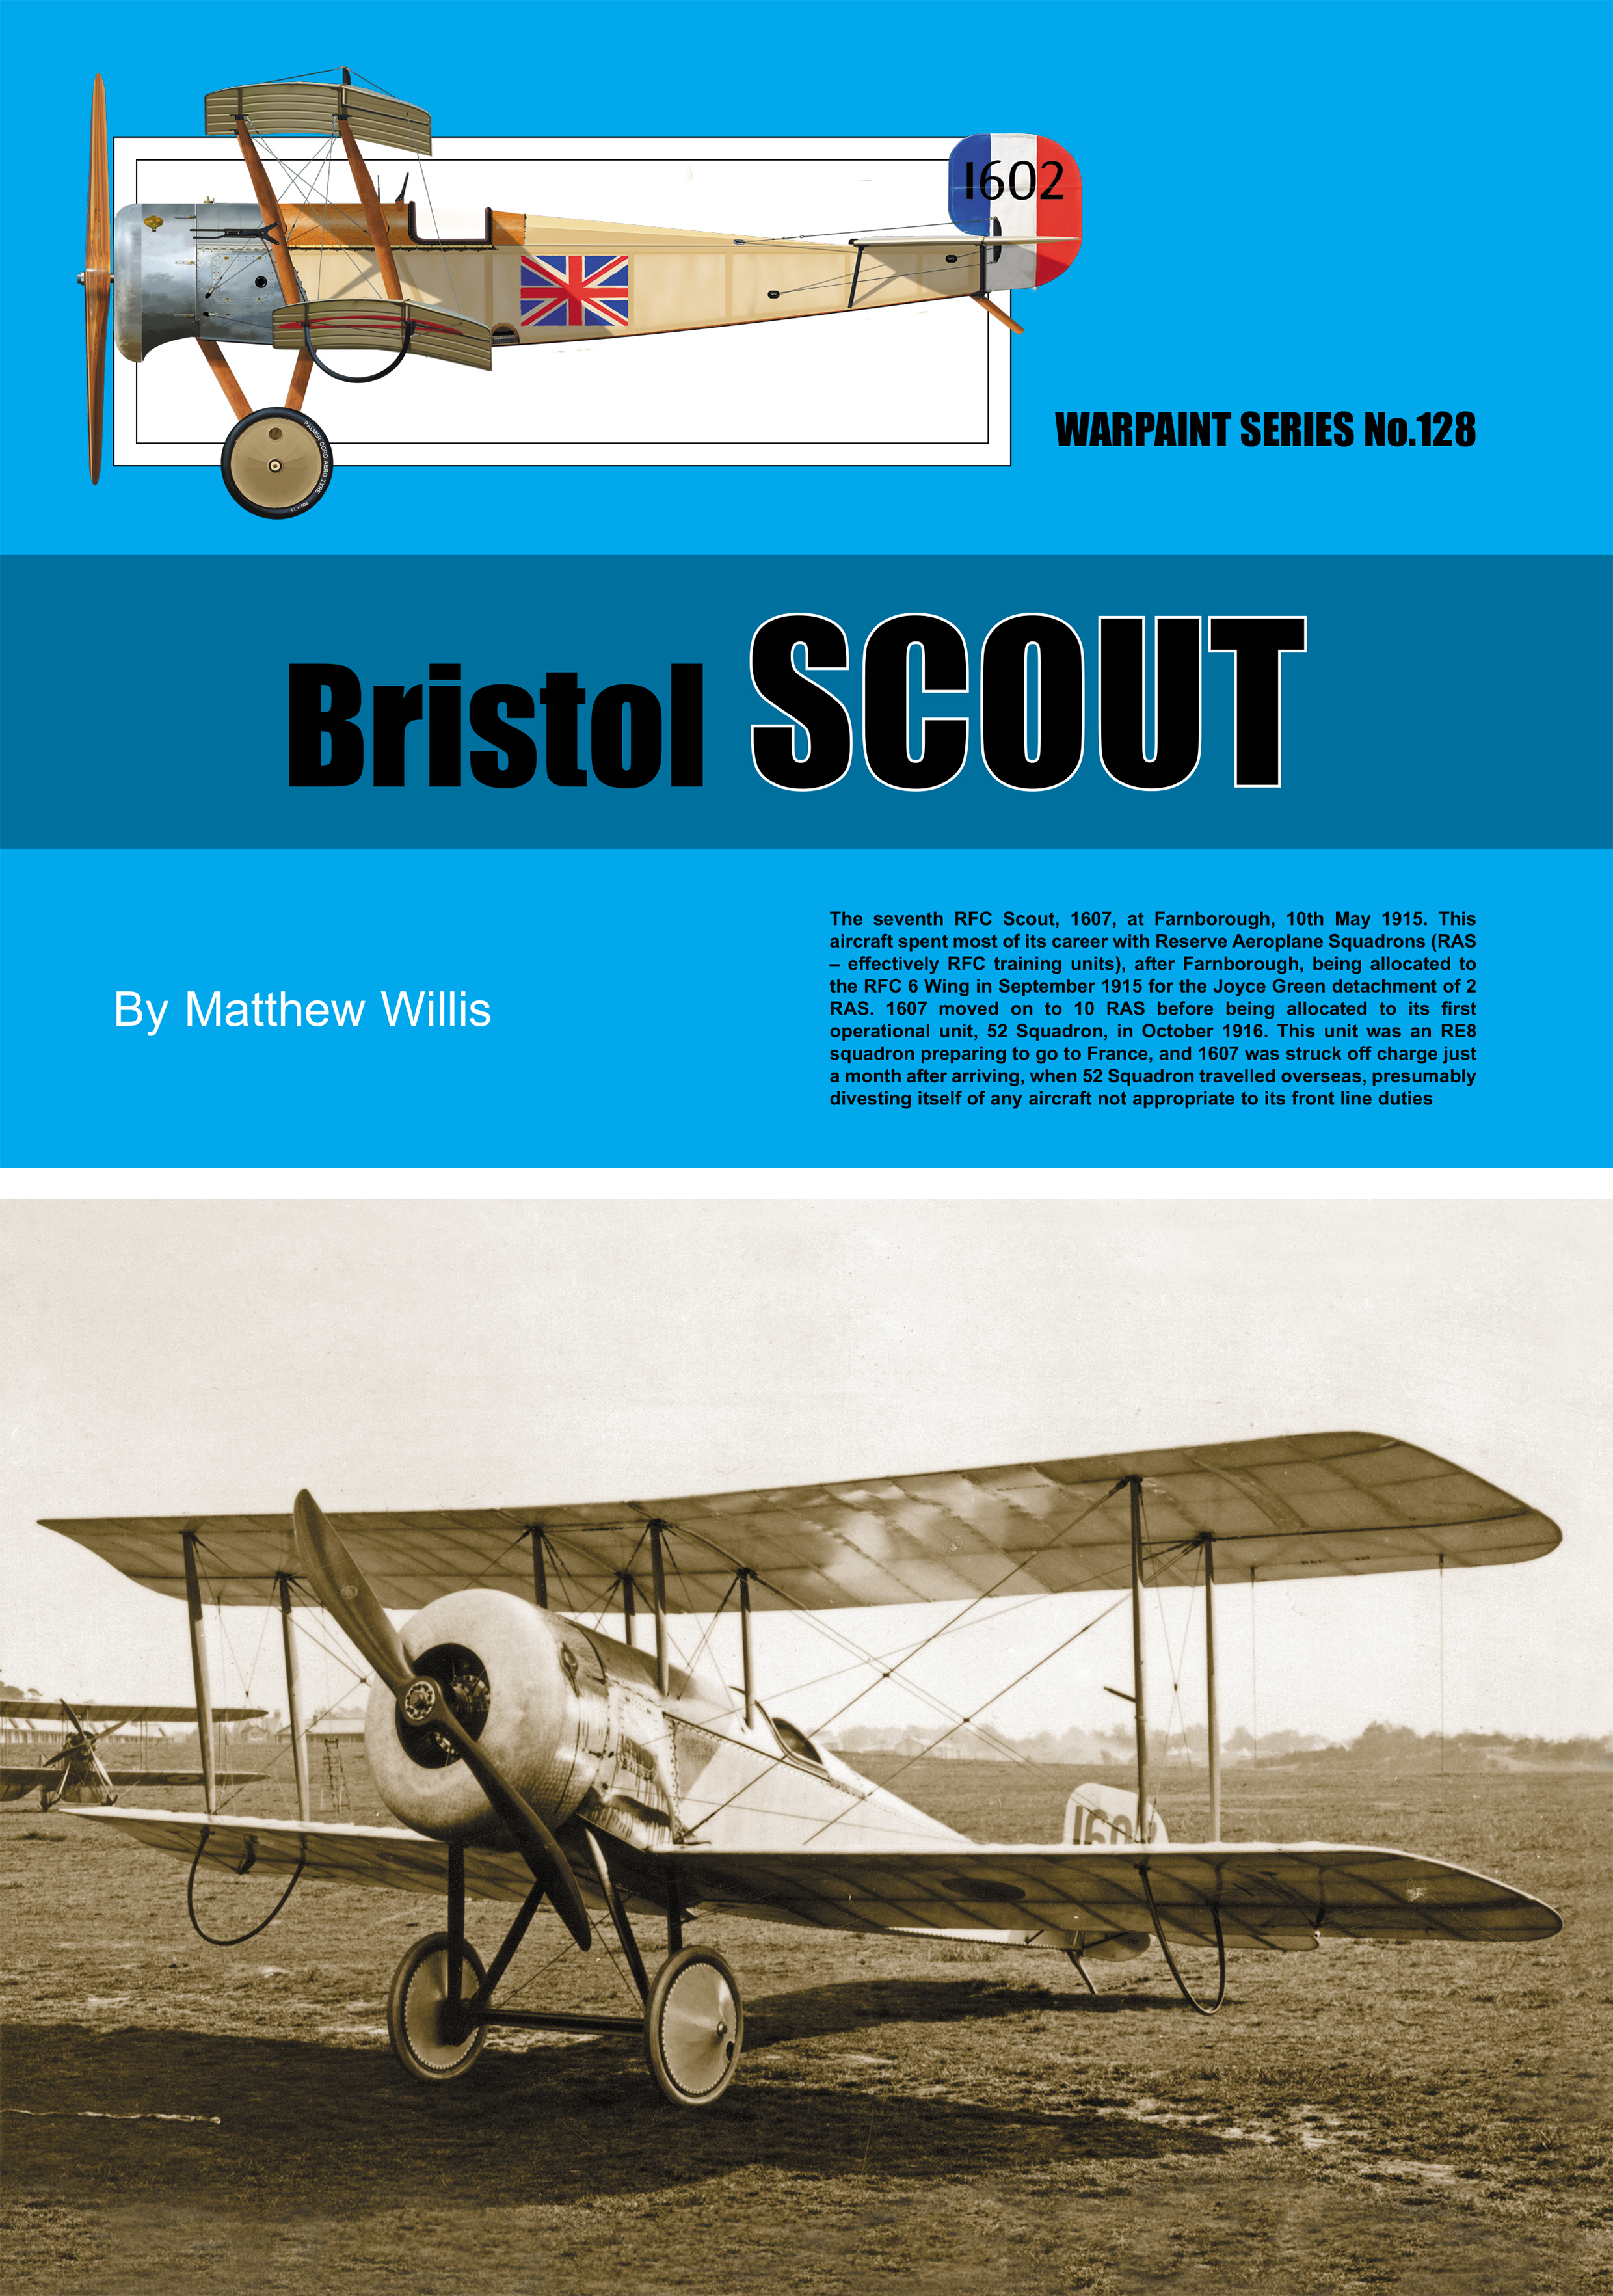 Guideline Publications Ltd 128 Bristol Scout Warpaint no 128 